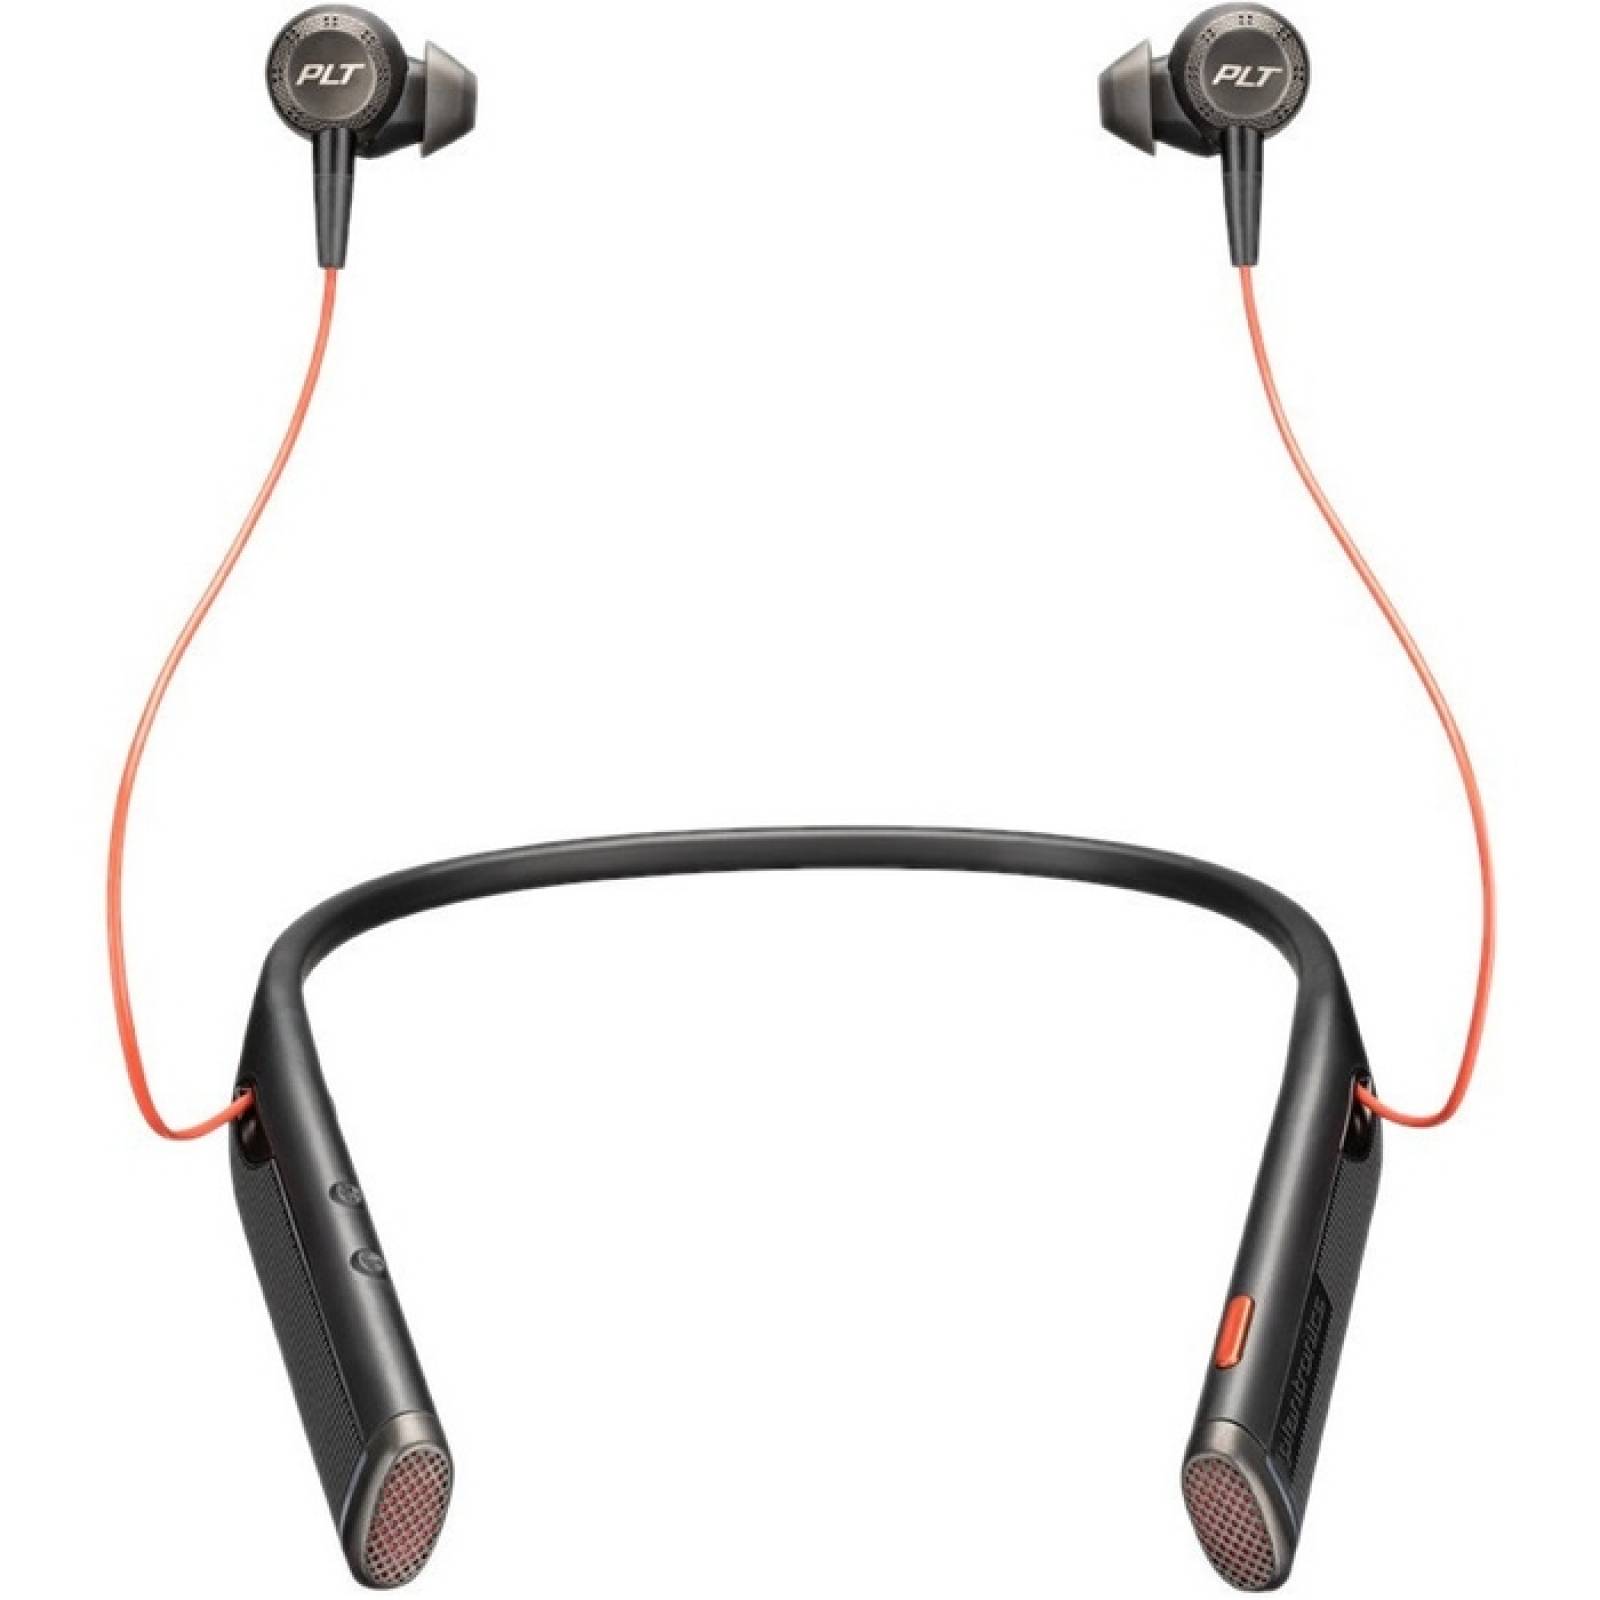 Auriculares con banda para el cuello Bluetooth Plantronics Voyager 6200 UC listos para negocios con auriculares